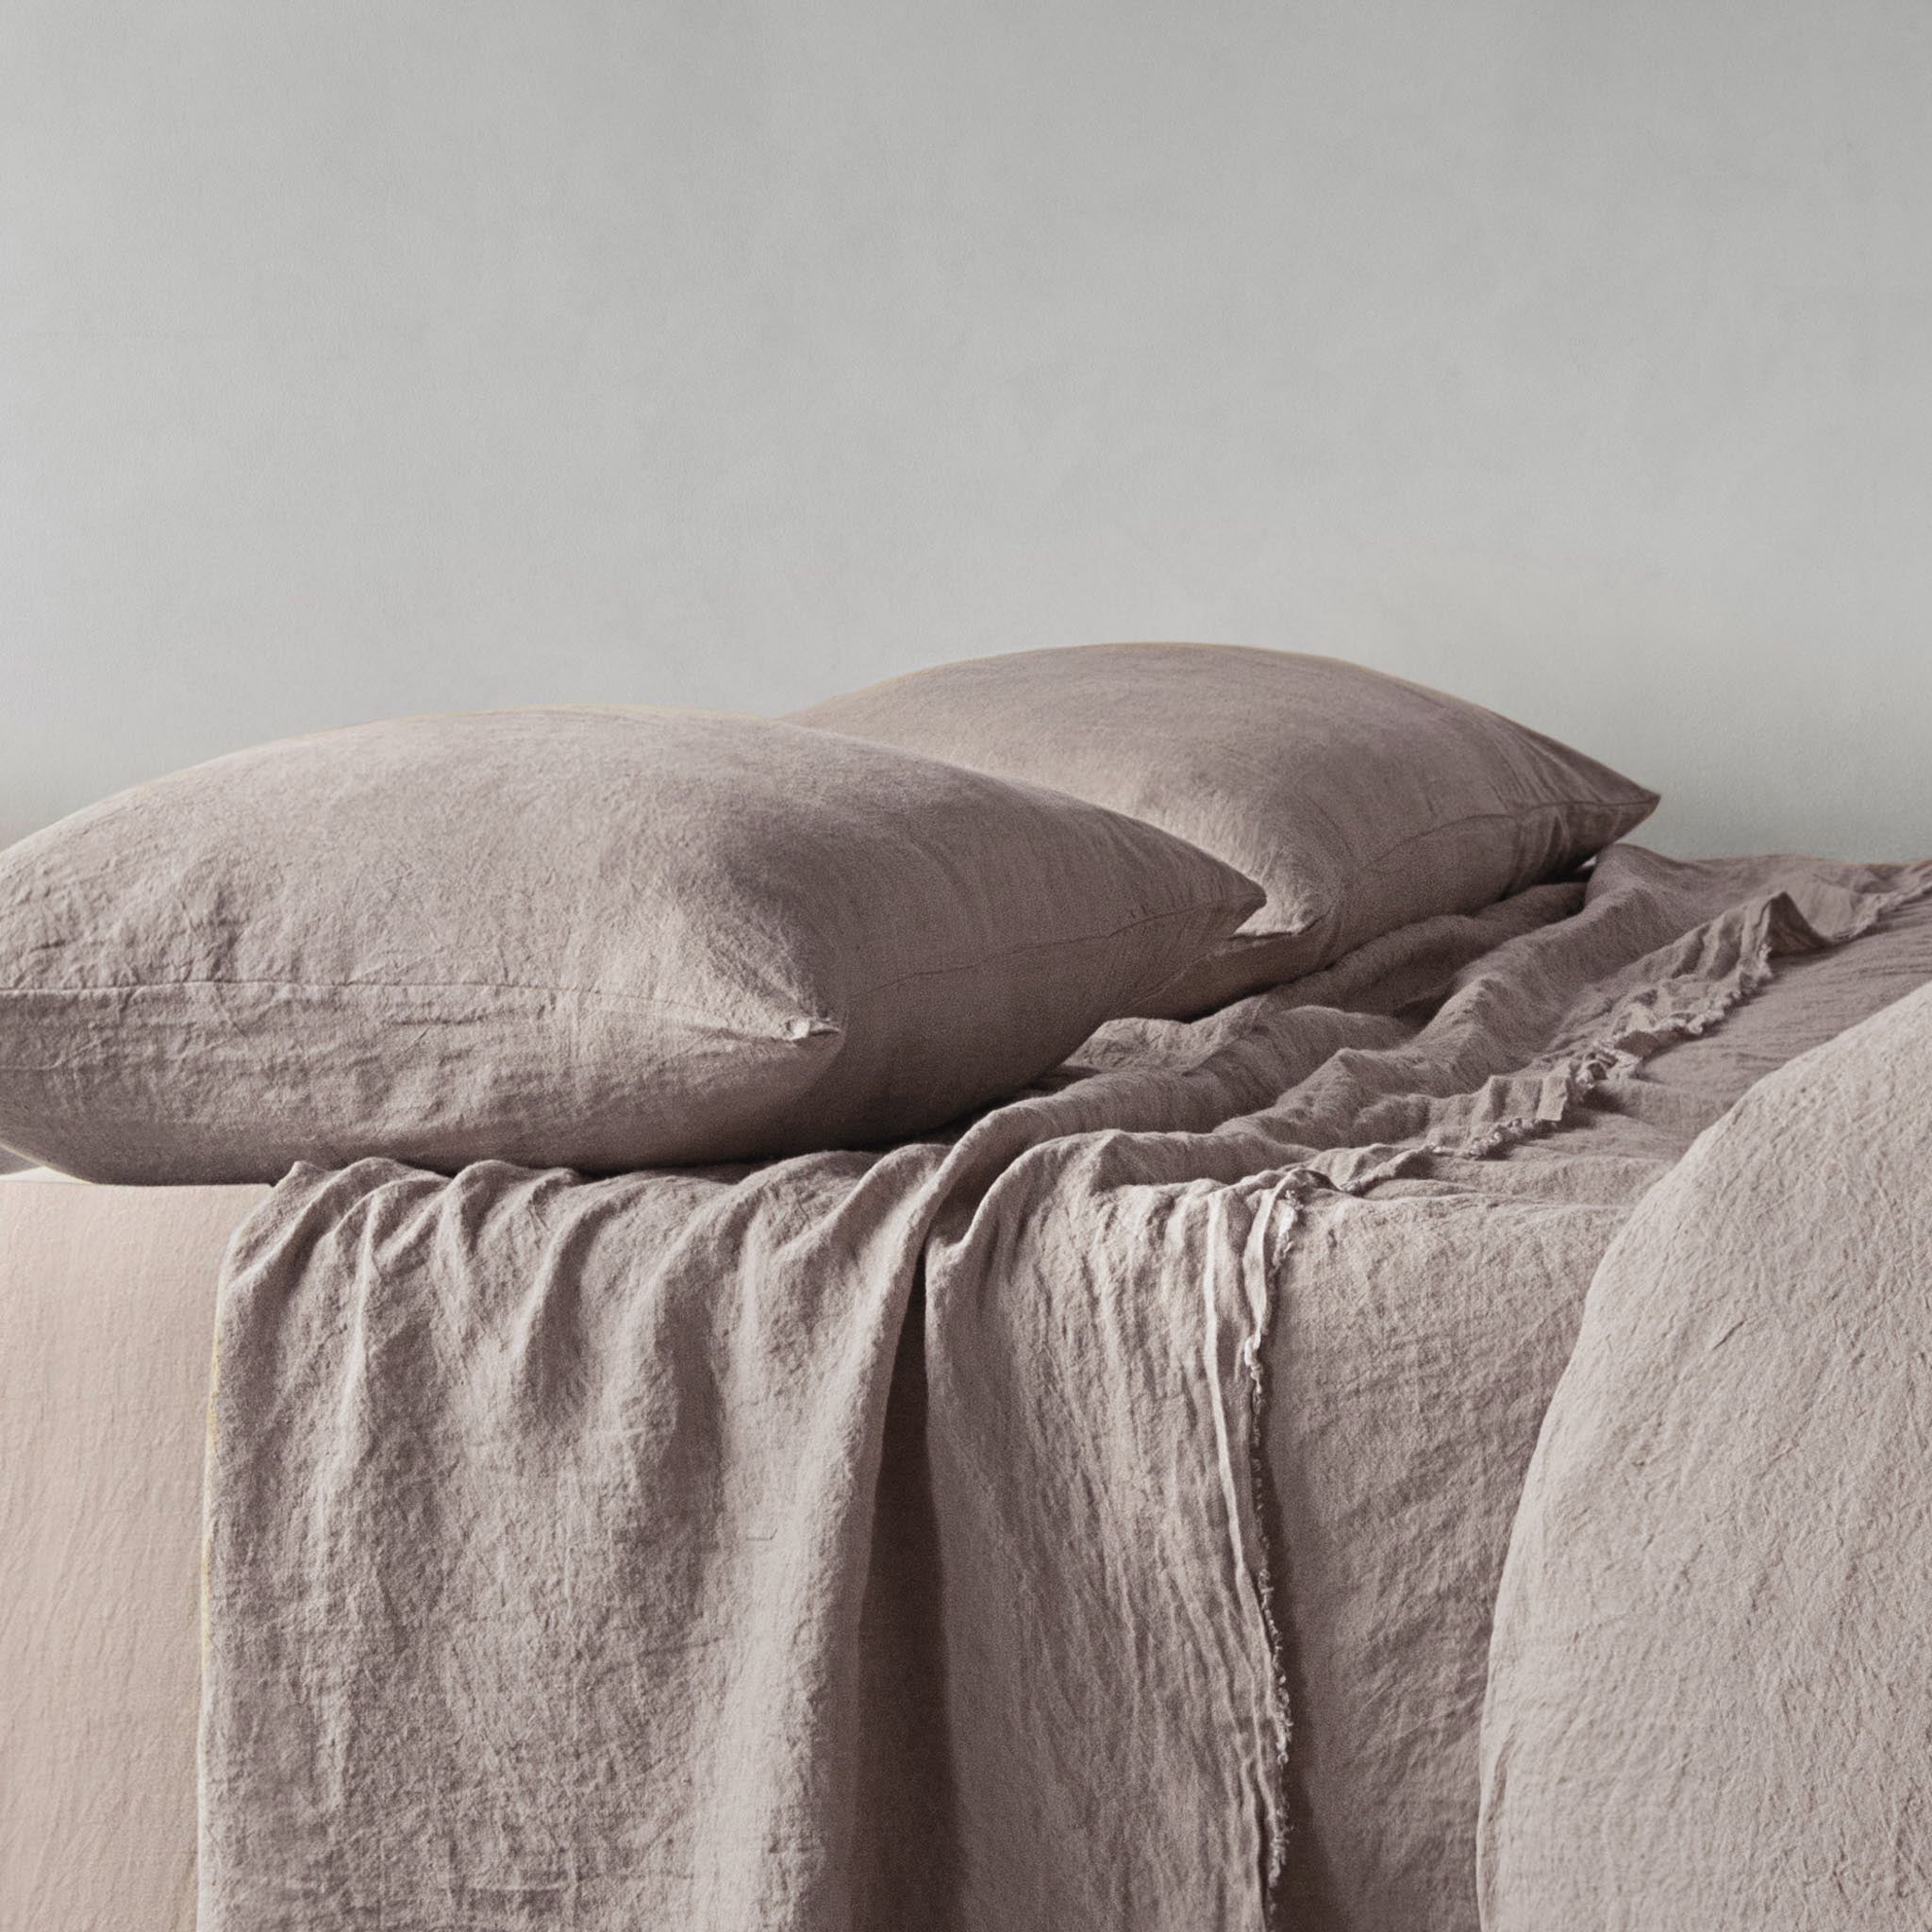 Linen Pillowcases | Lavender Tone | Hale Mercantile Co.